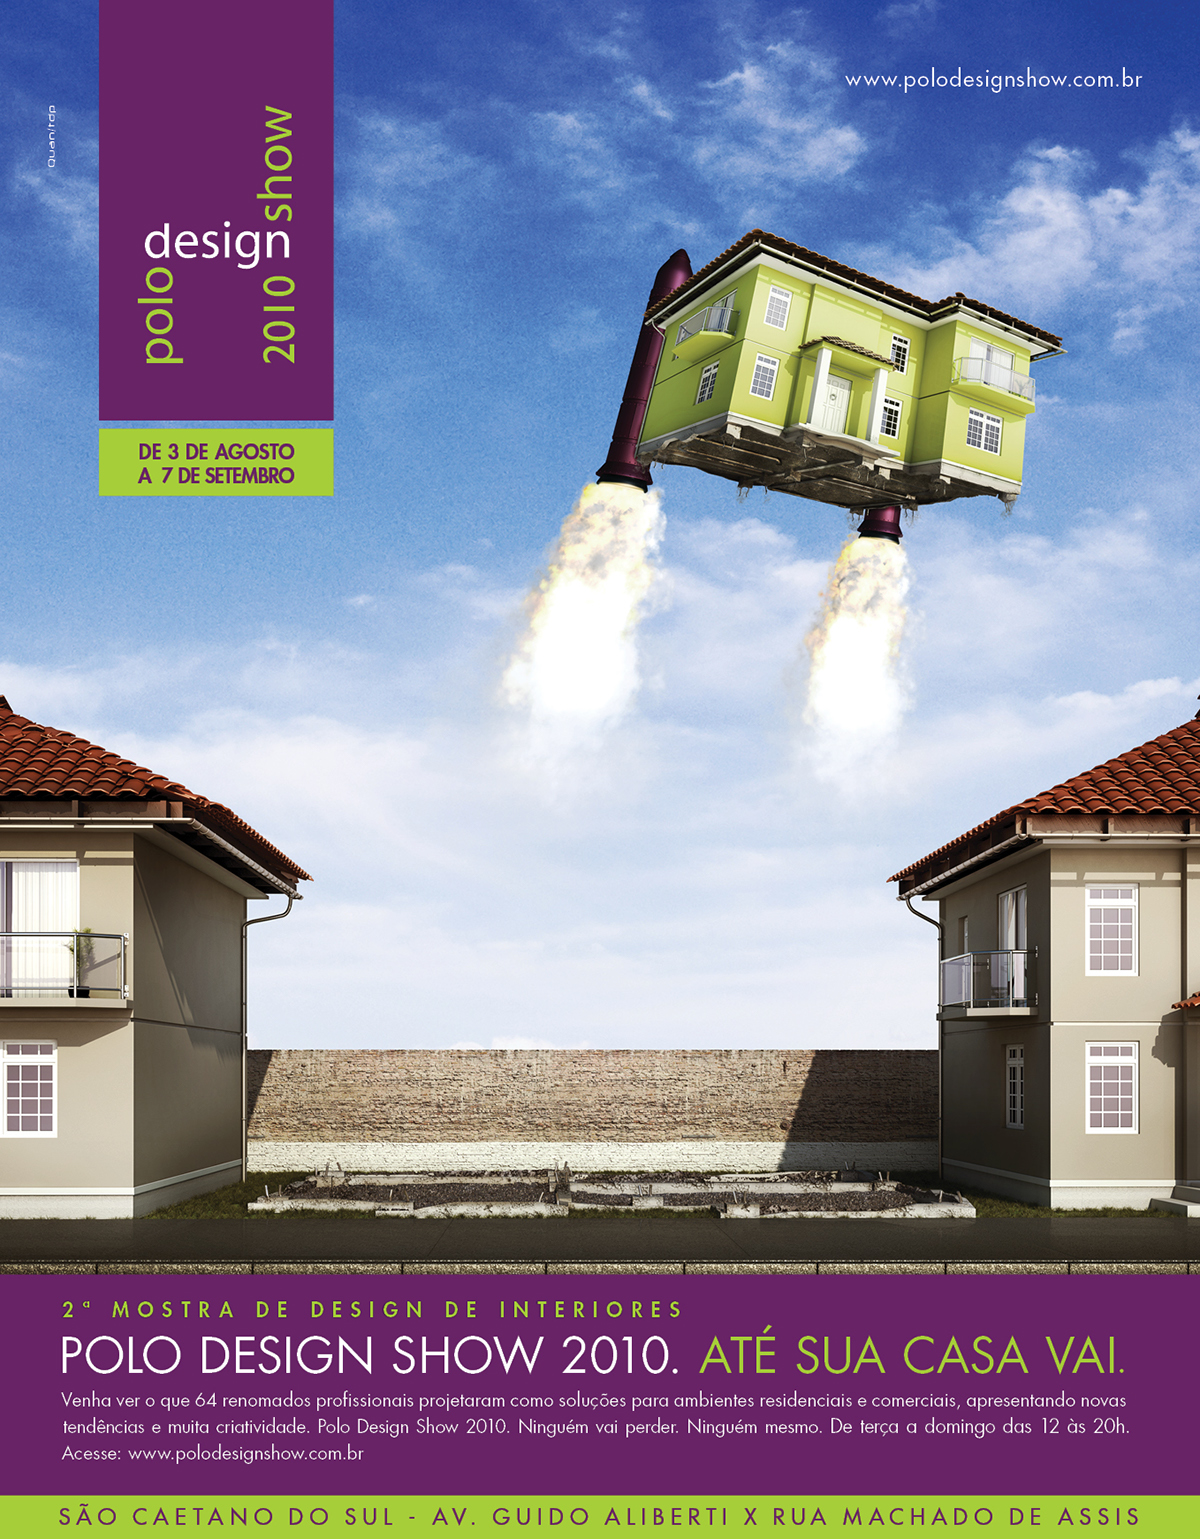 Show polo furniture decoration Decoração móveis campanha revista magazine mostra interiores Interior são paulo Brasil Brazil